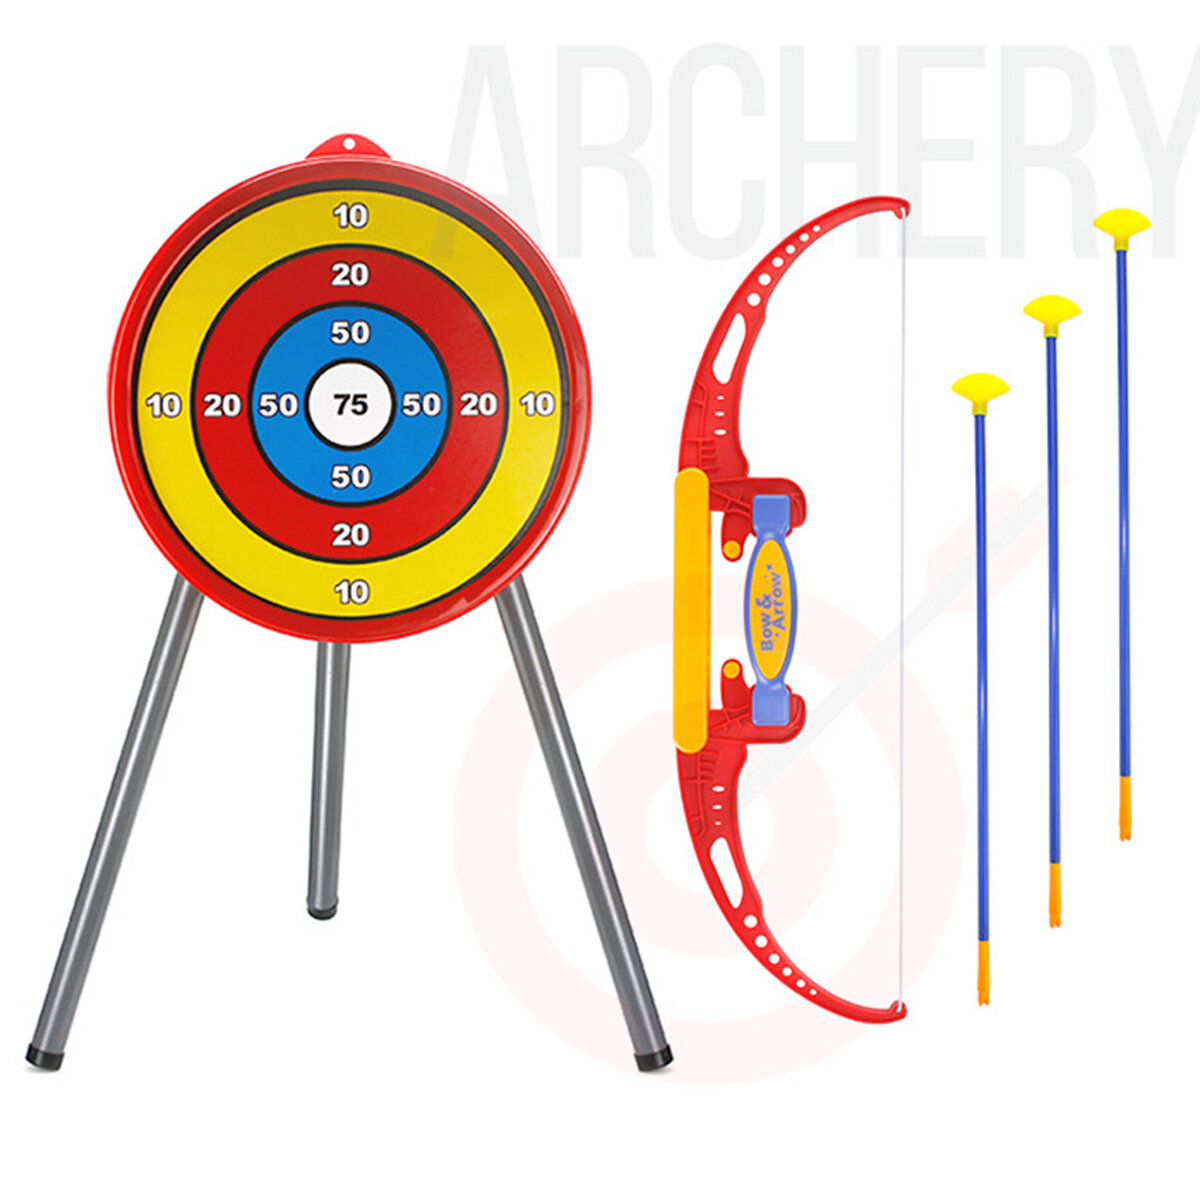 Classic Archery Shoot Game Set Ontwikkel vaardigheidsnieuwigheden Speelgoed voor jonge kinderen